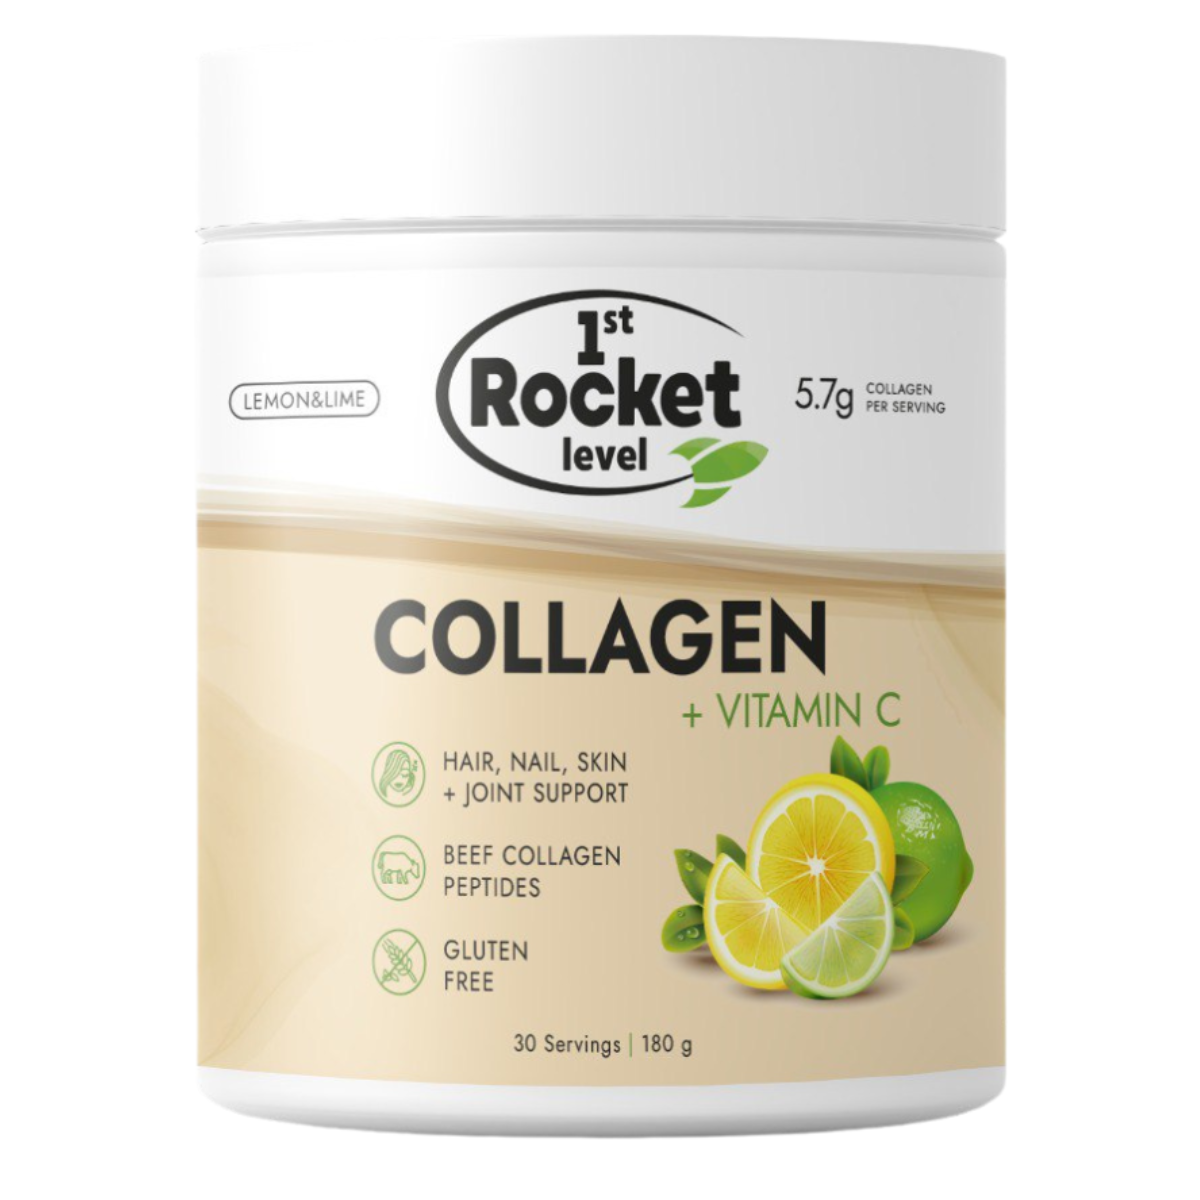 Коллаген «Collagen + Vitamin C» 1st Rocket Level Лимон Лайм 180 г